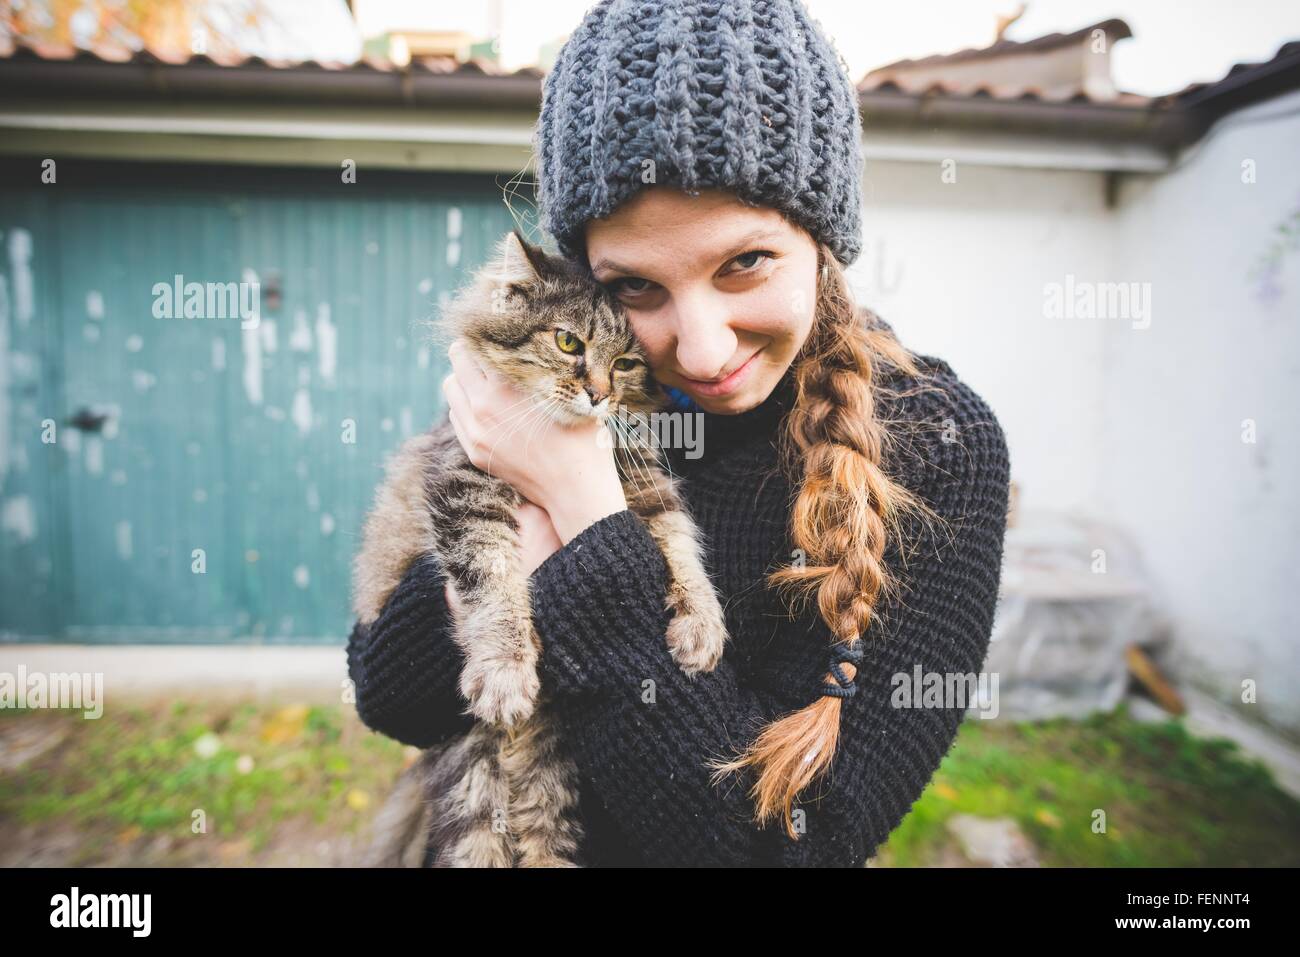 Giovane donna indossa knit hat snuggling cat, guardando alla fotocamera a sorridere Foto Stock